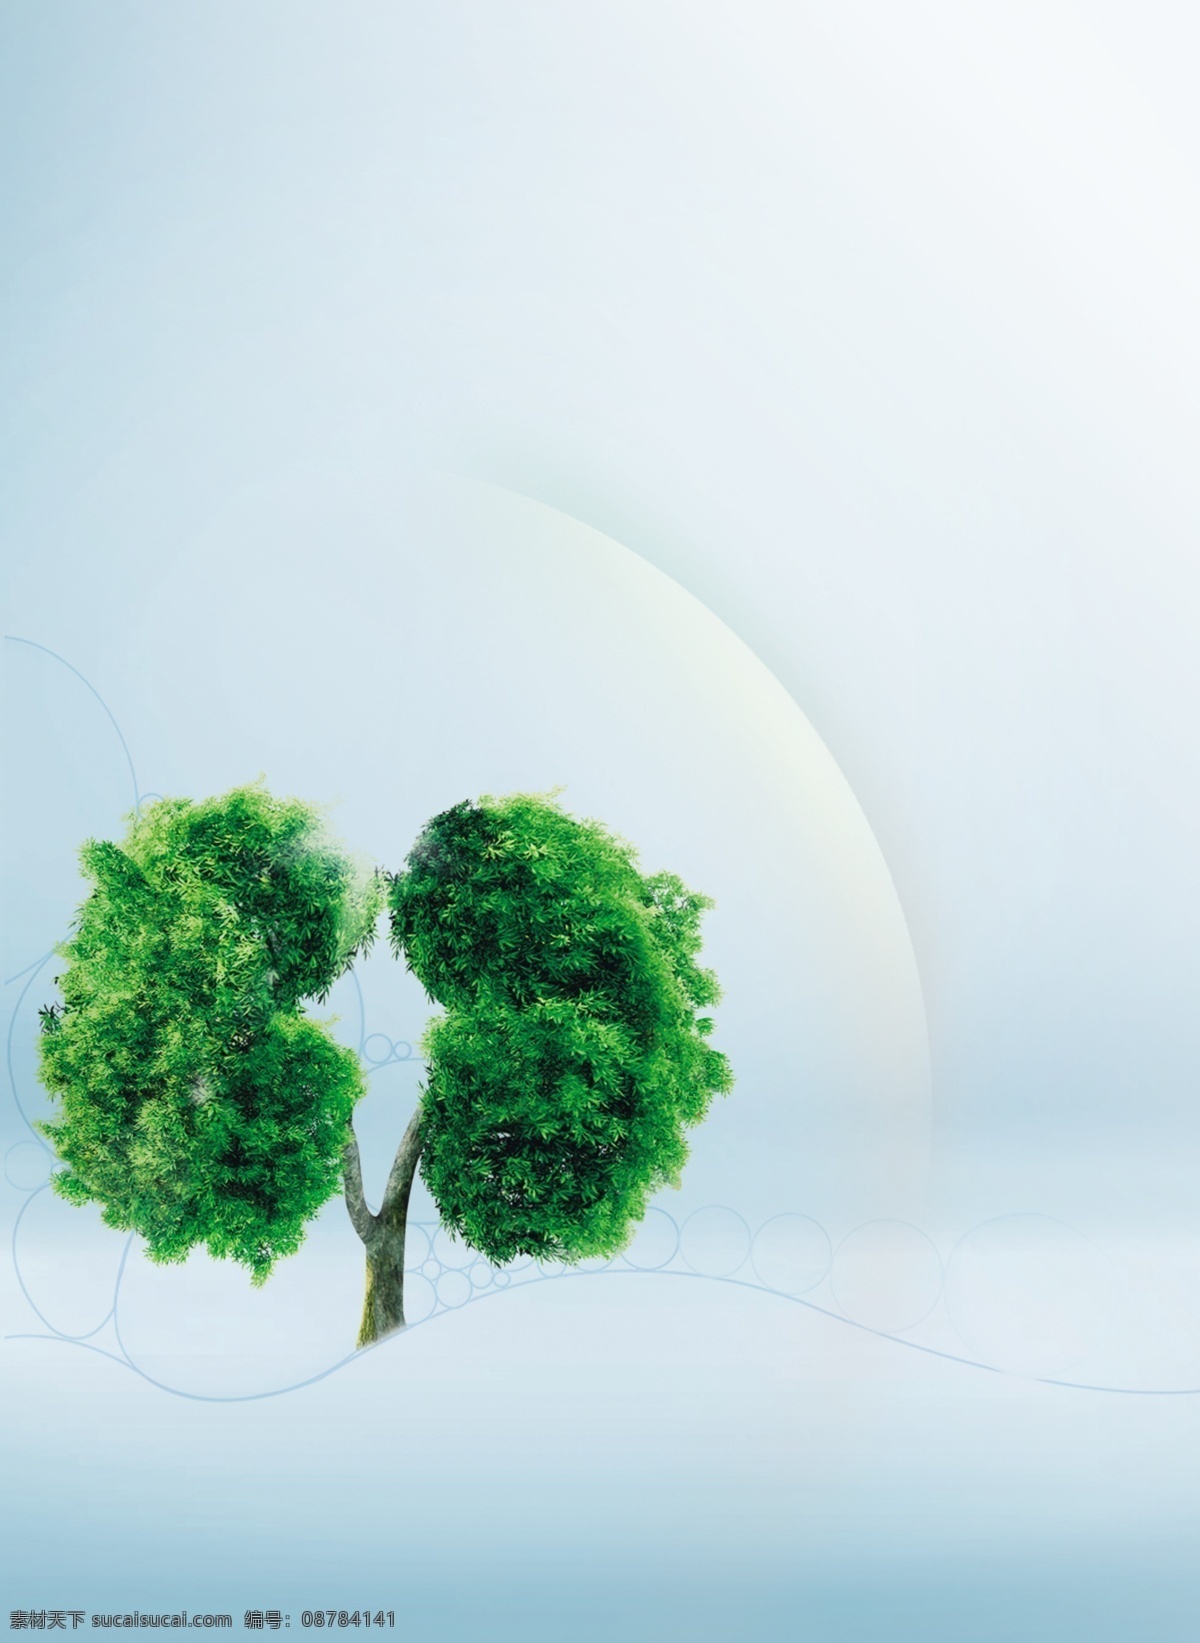 绿树背景 树 肾 器官 背景 安全 防护 保护罩 蓝色 清新 简洁 大气 底图